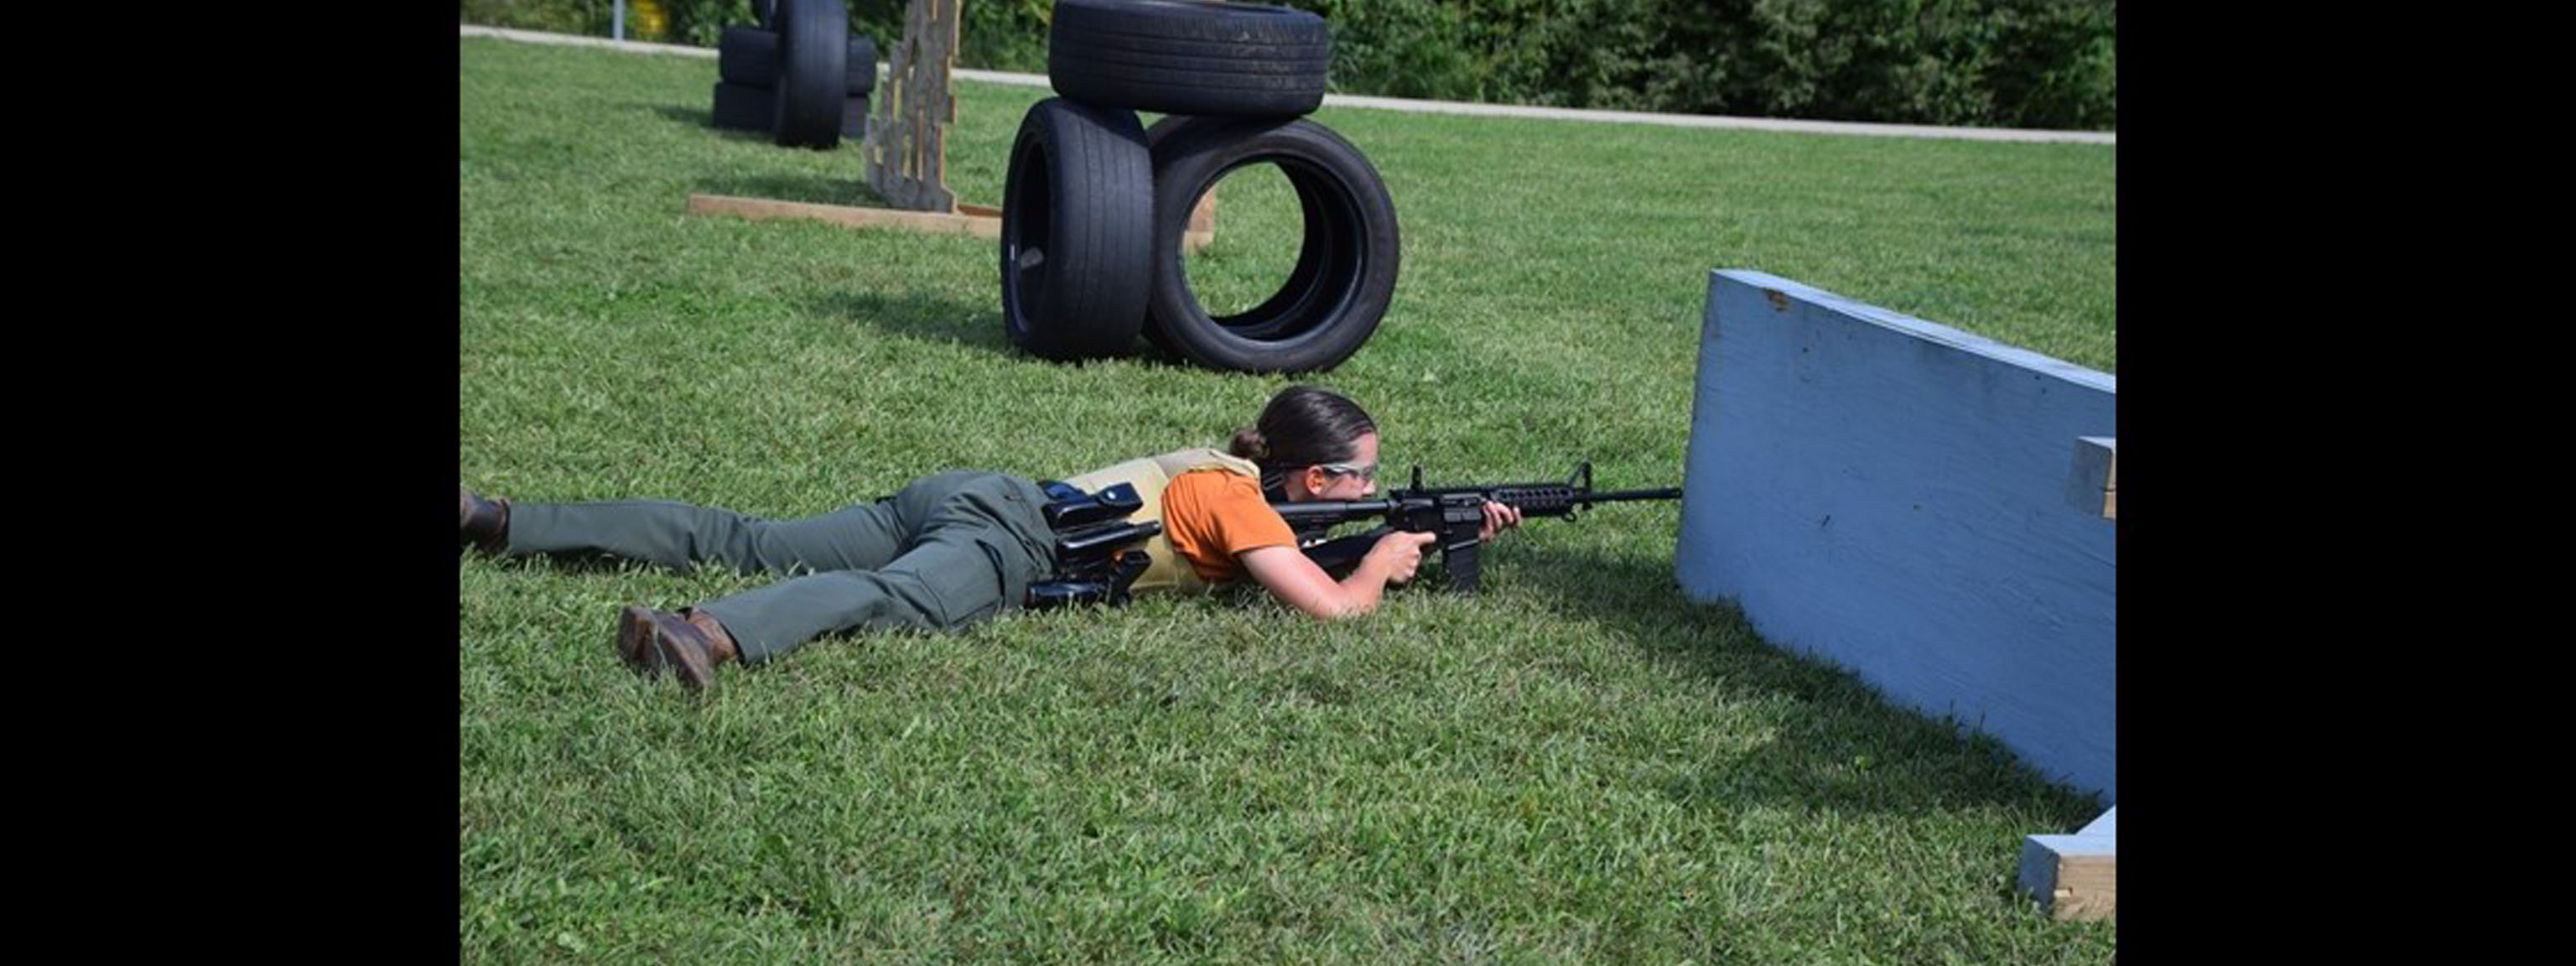 Sniper Training